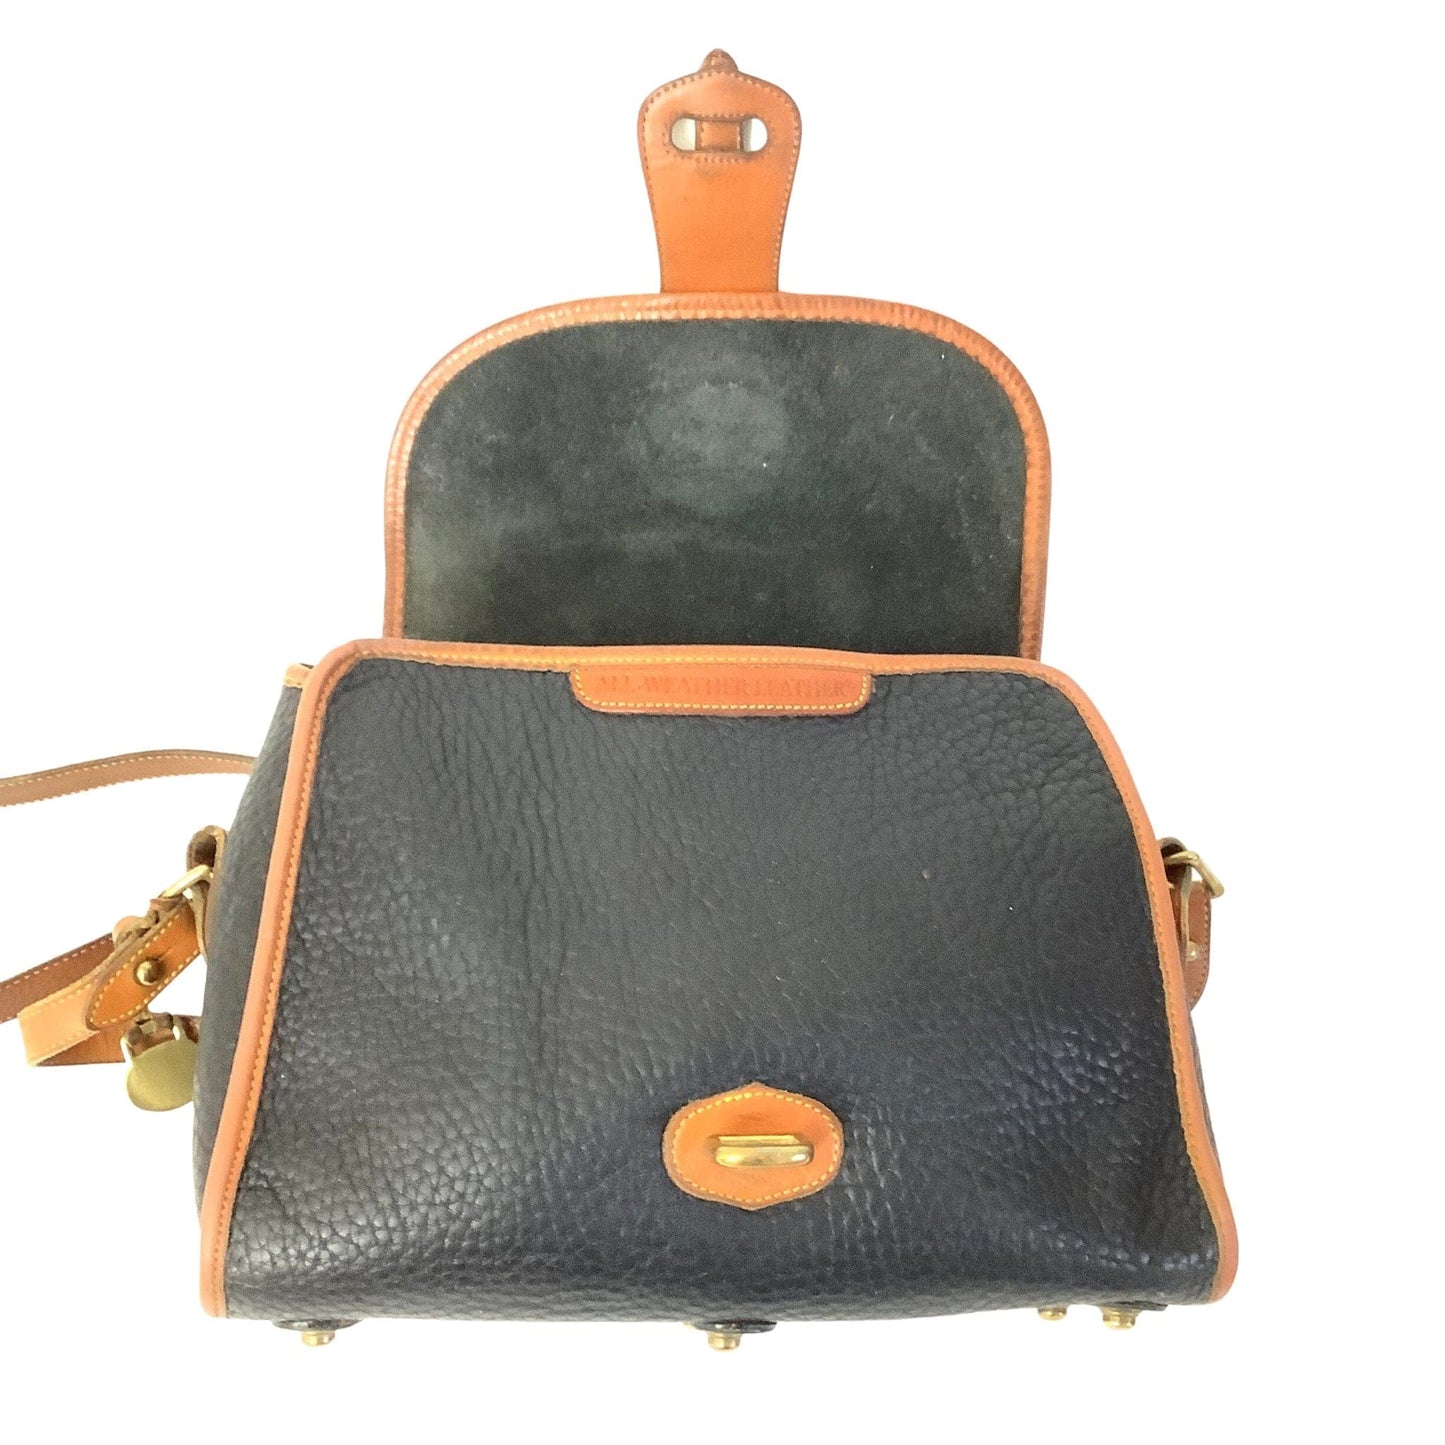 1980s Dooney Bourke Bag Black / Leather / Vintage 1980s